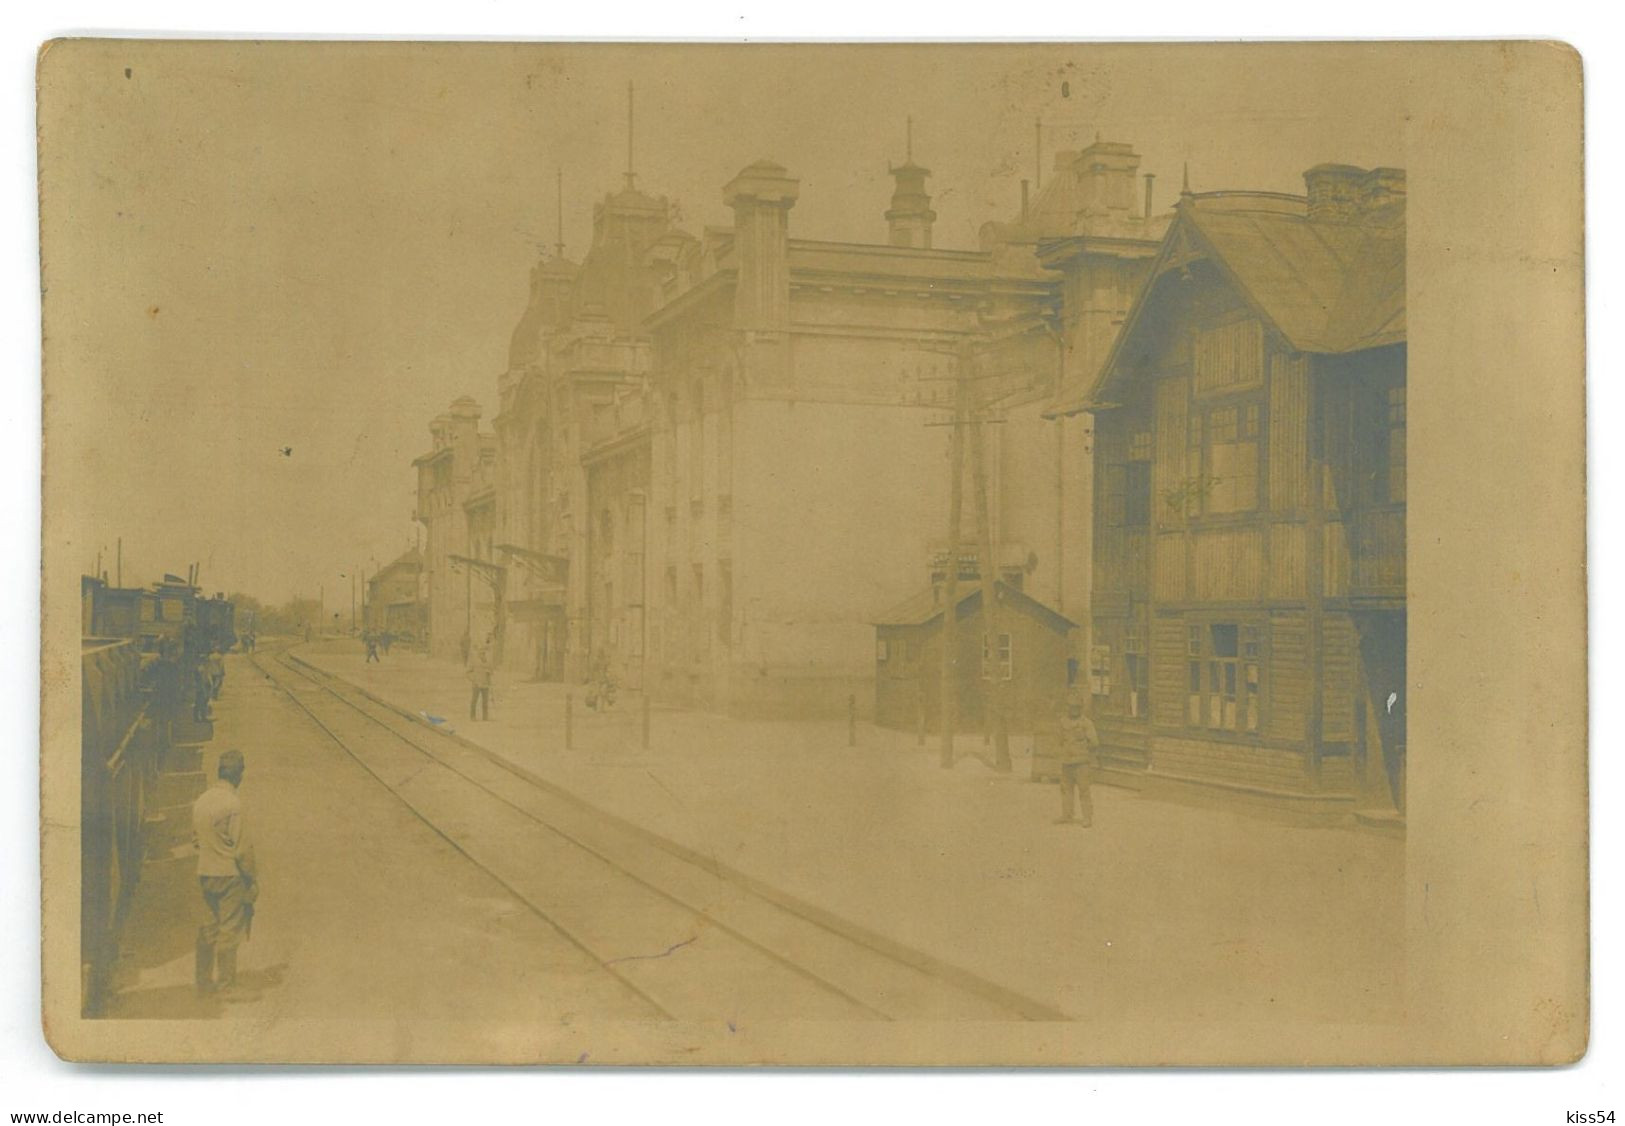 UK - 25197 KOWEL, Railway Station, Ukraine - Old Postcard, CENSOR - Used - 1917 - Ukraine